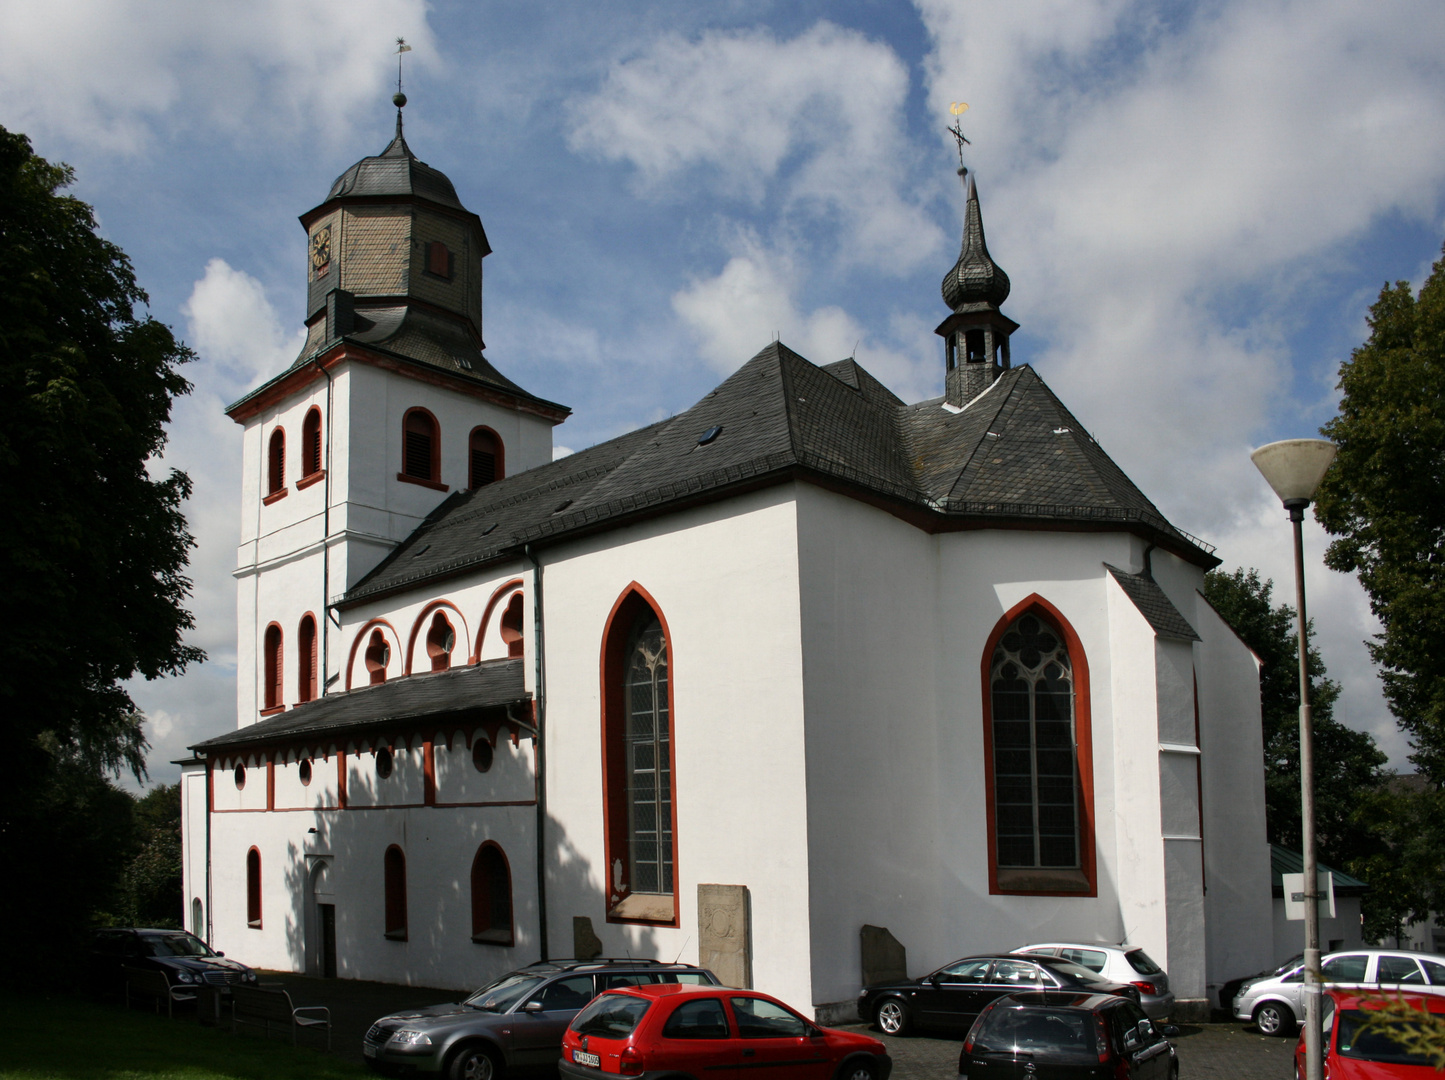 Jesus-Christus-Kirche in Meinerzhagen